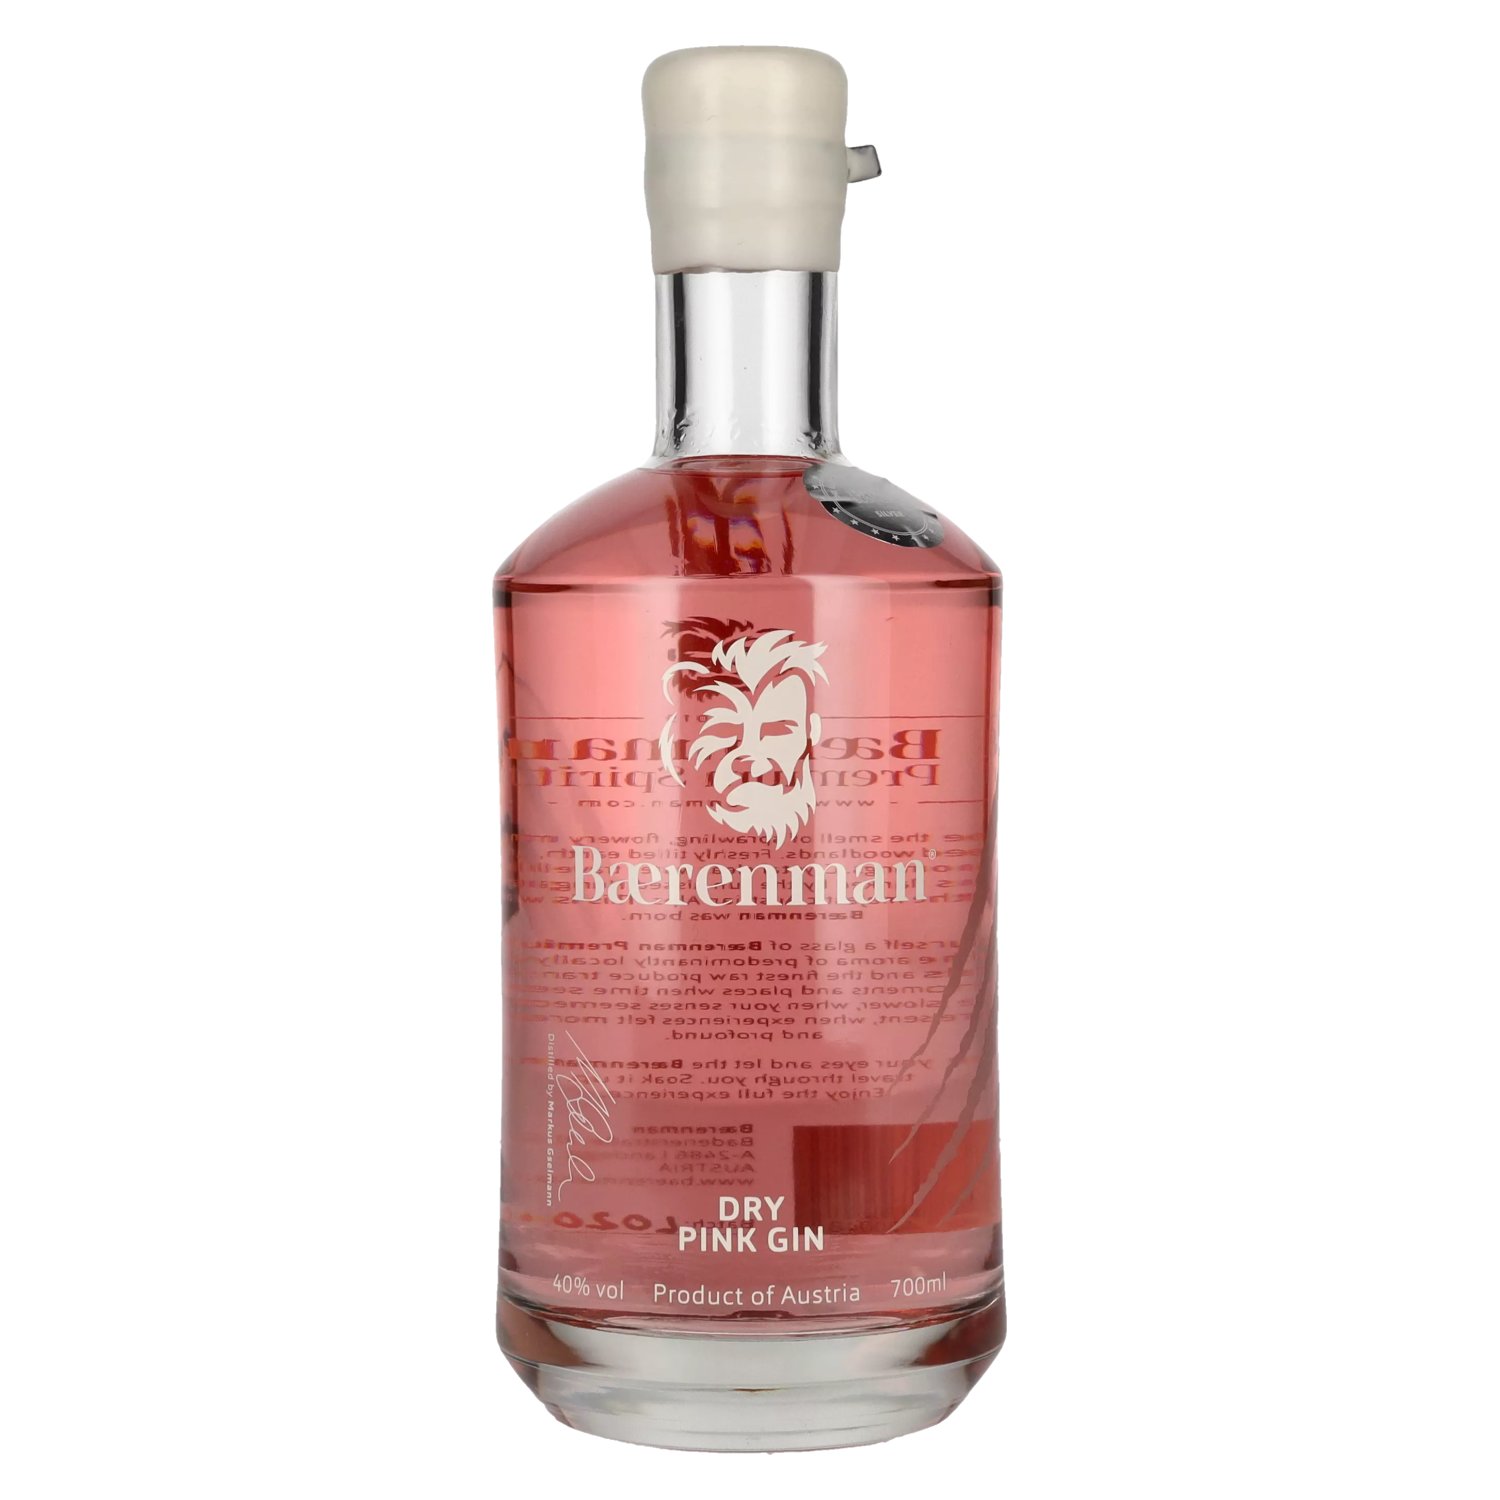 Baerenman Dry Pink Gin 40% delicando - Vol. 0,7l